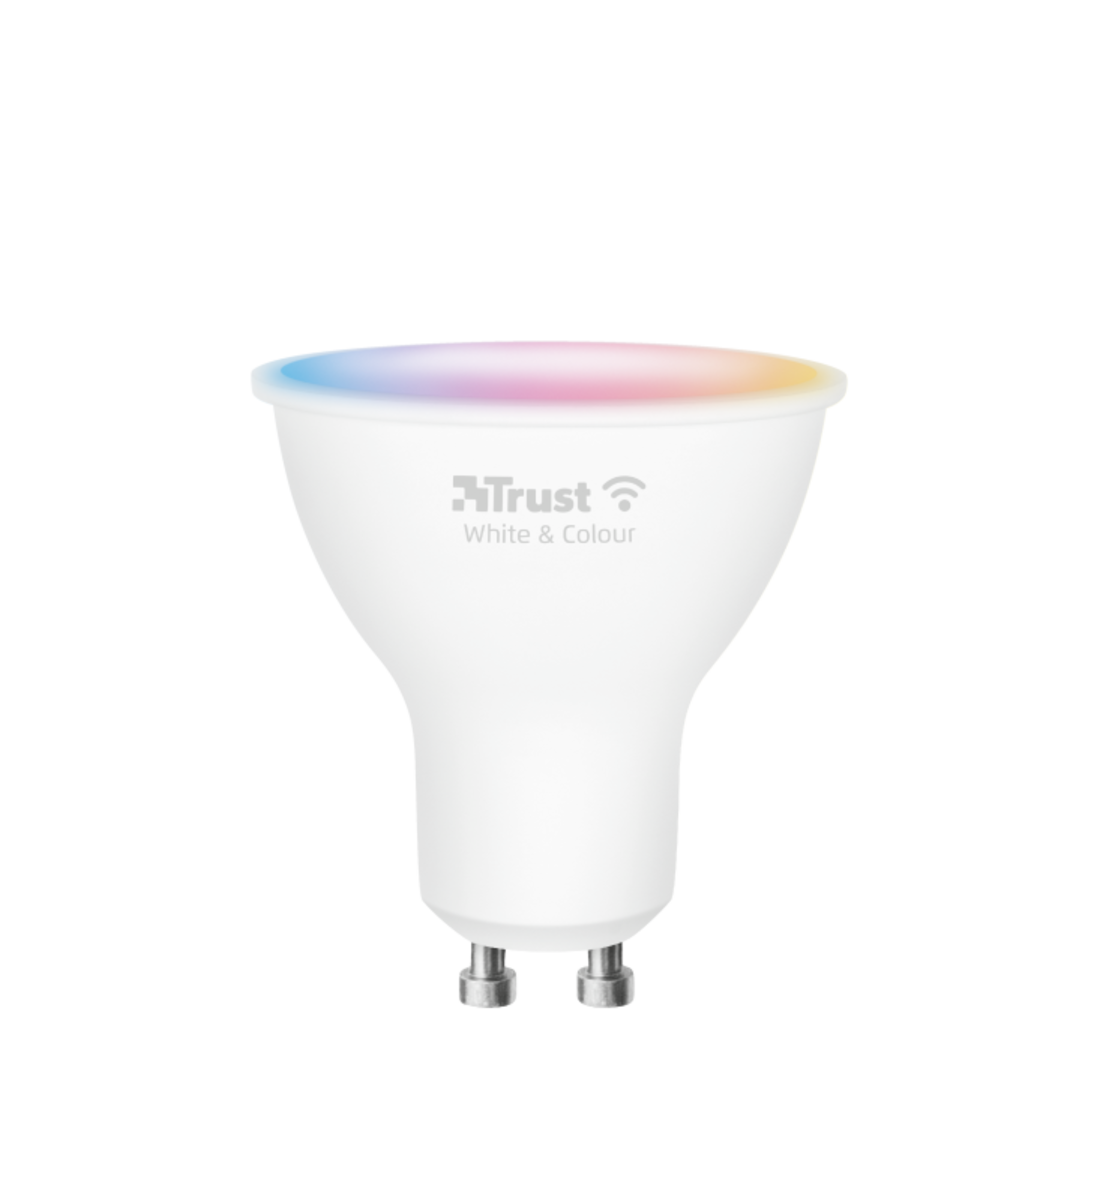 GU10 Smart WIFI Bulb - White & Colour